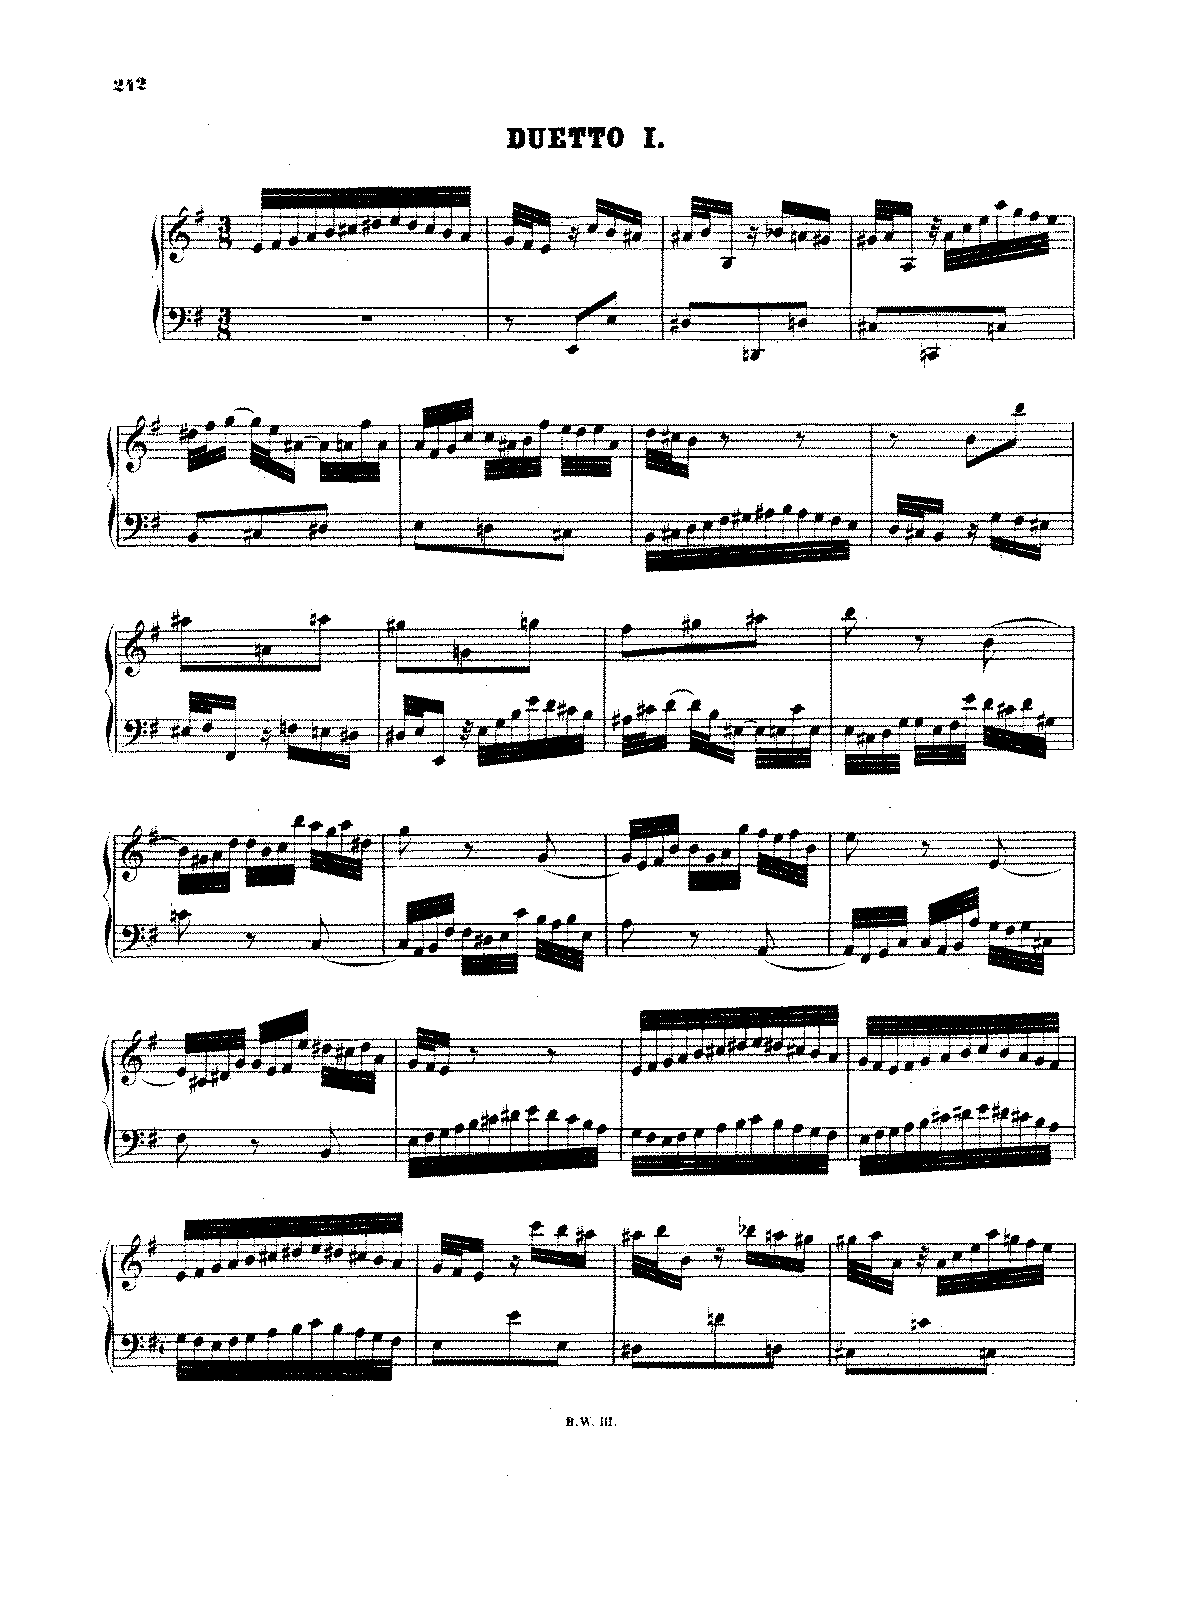 Duetto No.1 in E minor, BWV 802 (Bach, Johann Sebastian) - IMSLP